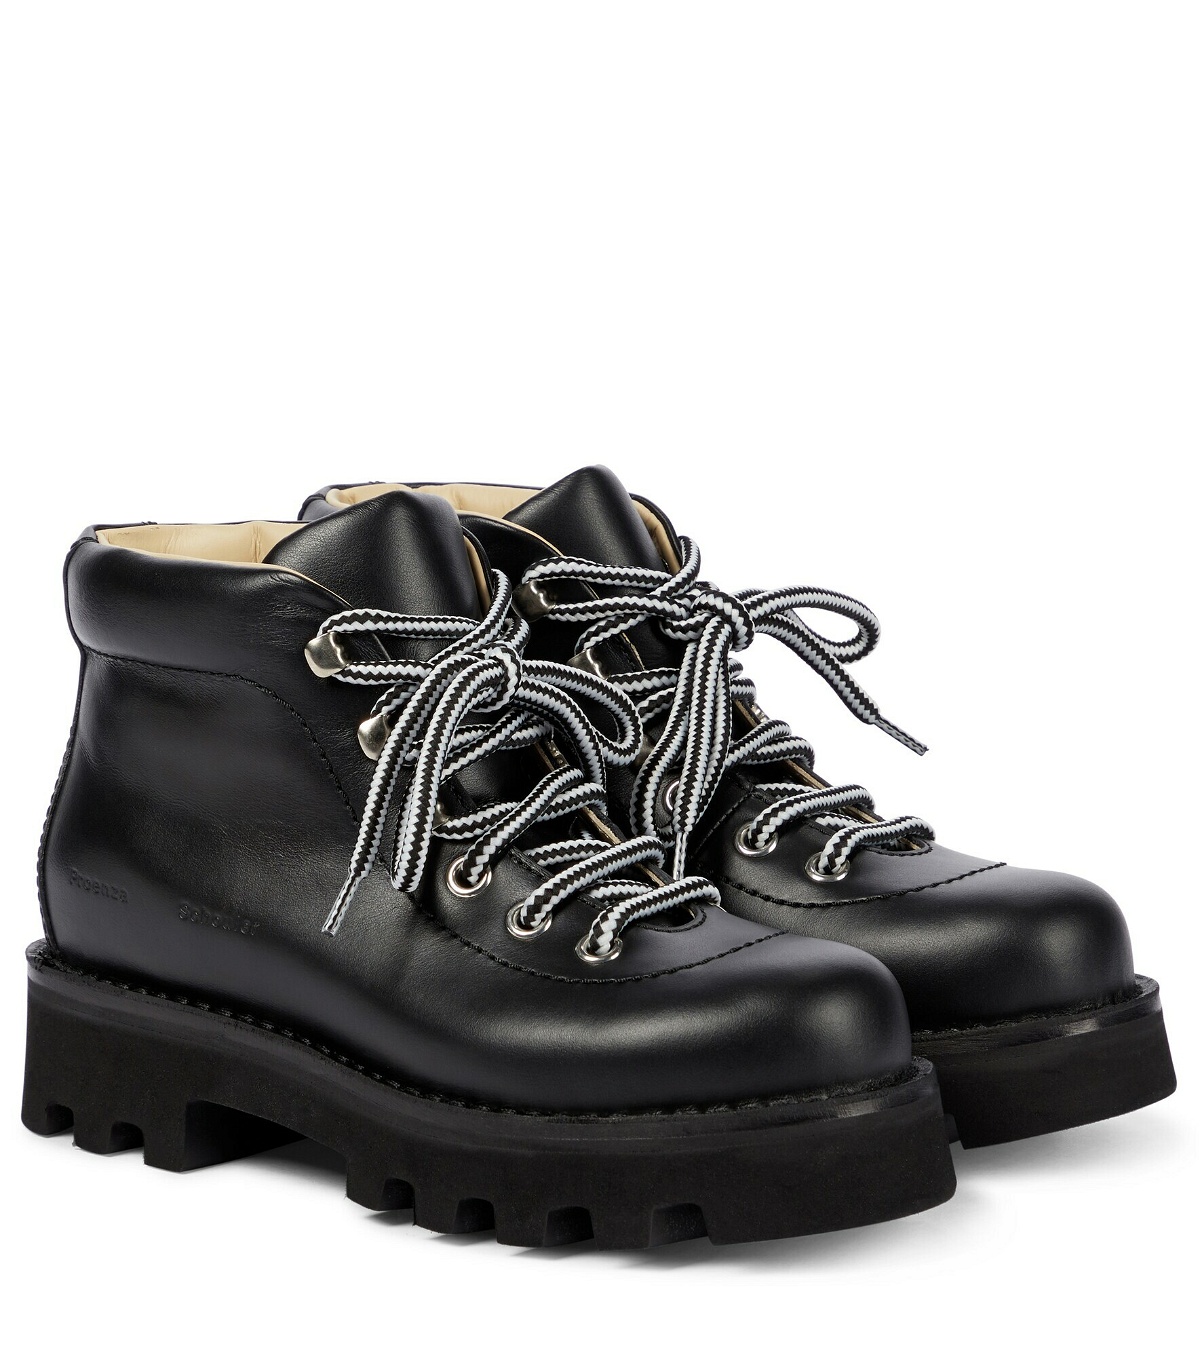 Proenza Schouler - Leather combat boots Proenza Schouler